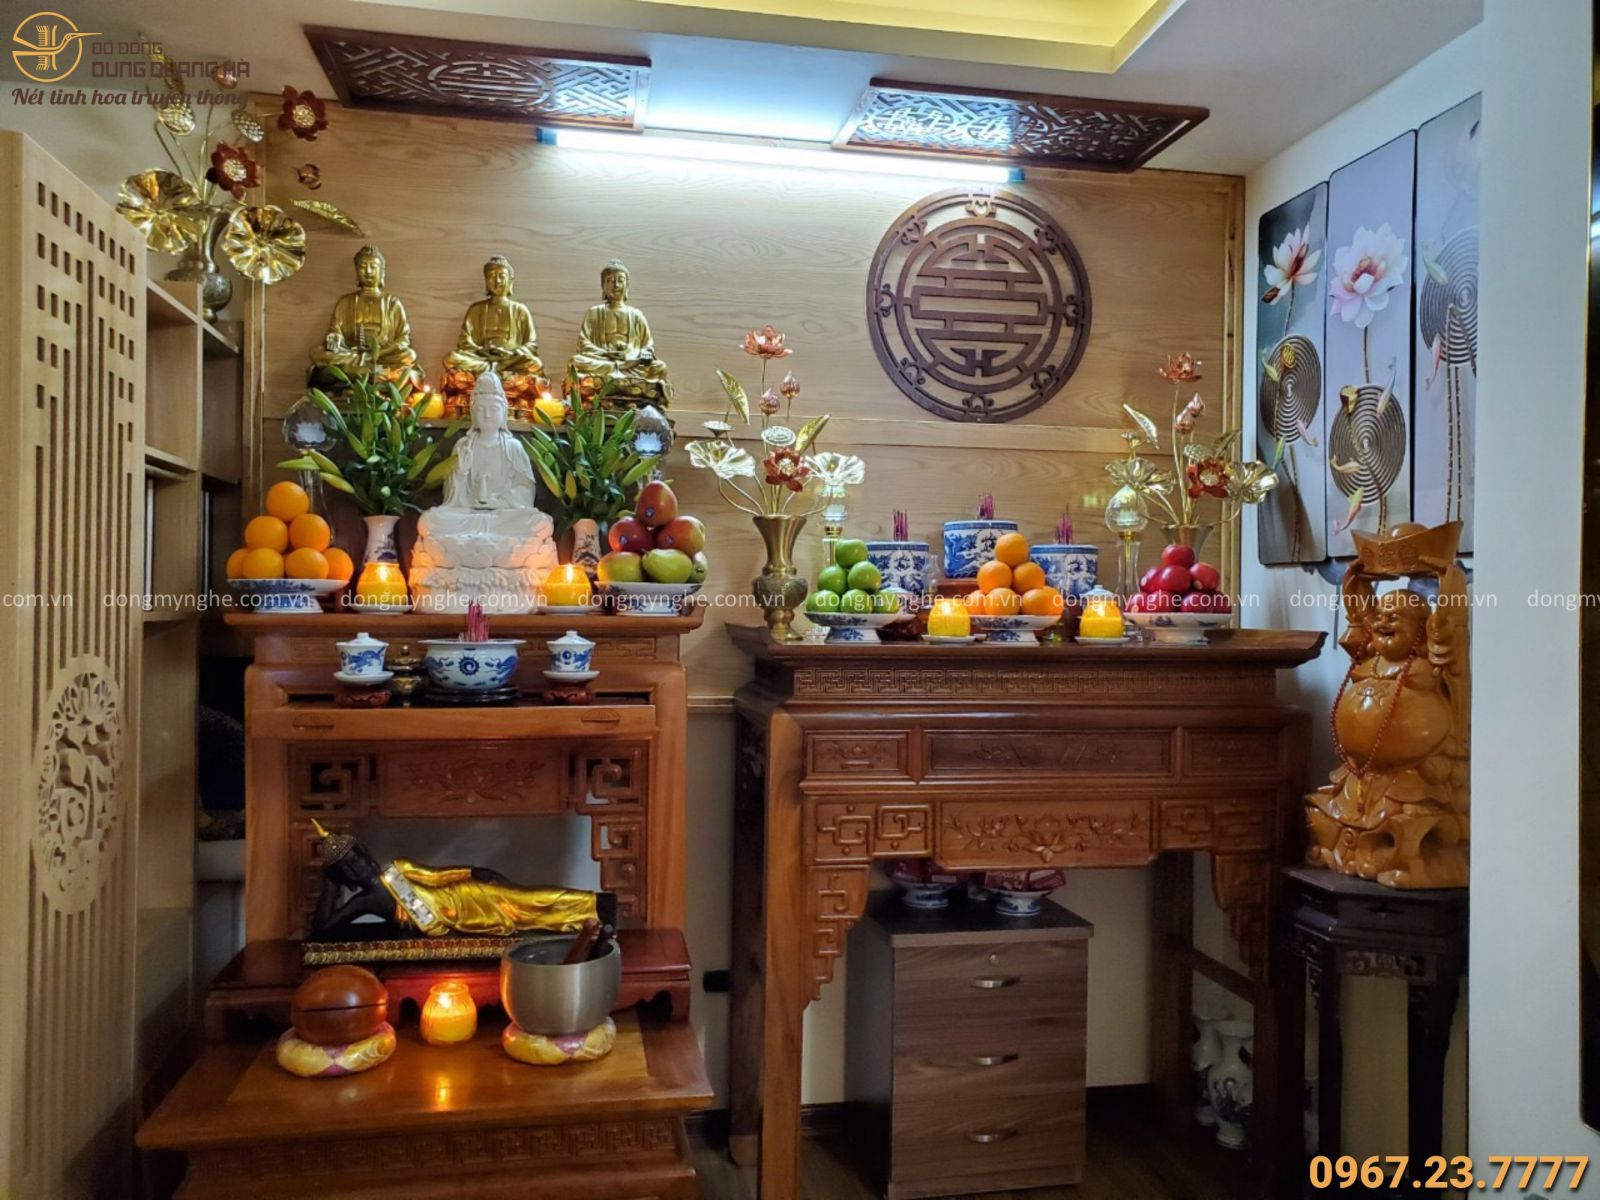 Hướng dẫn bố trí bàn thờ Gia Tiên và bàn thờ Phật tạo không gian trang nghiêm và đẹp mắt